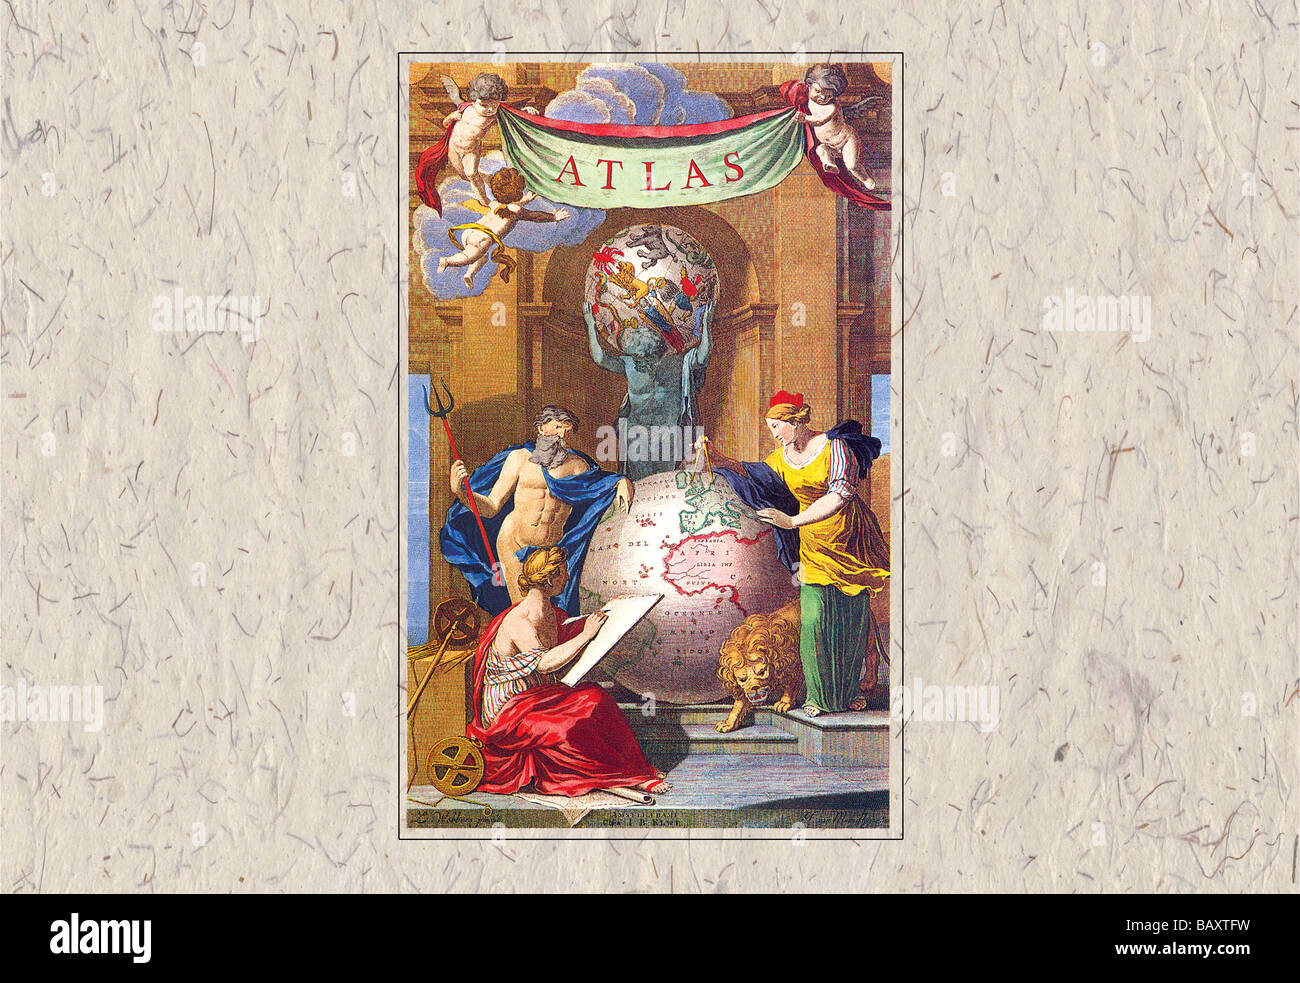 Himmlische Atlas-Titelseite Stockfoto